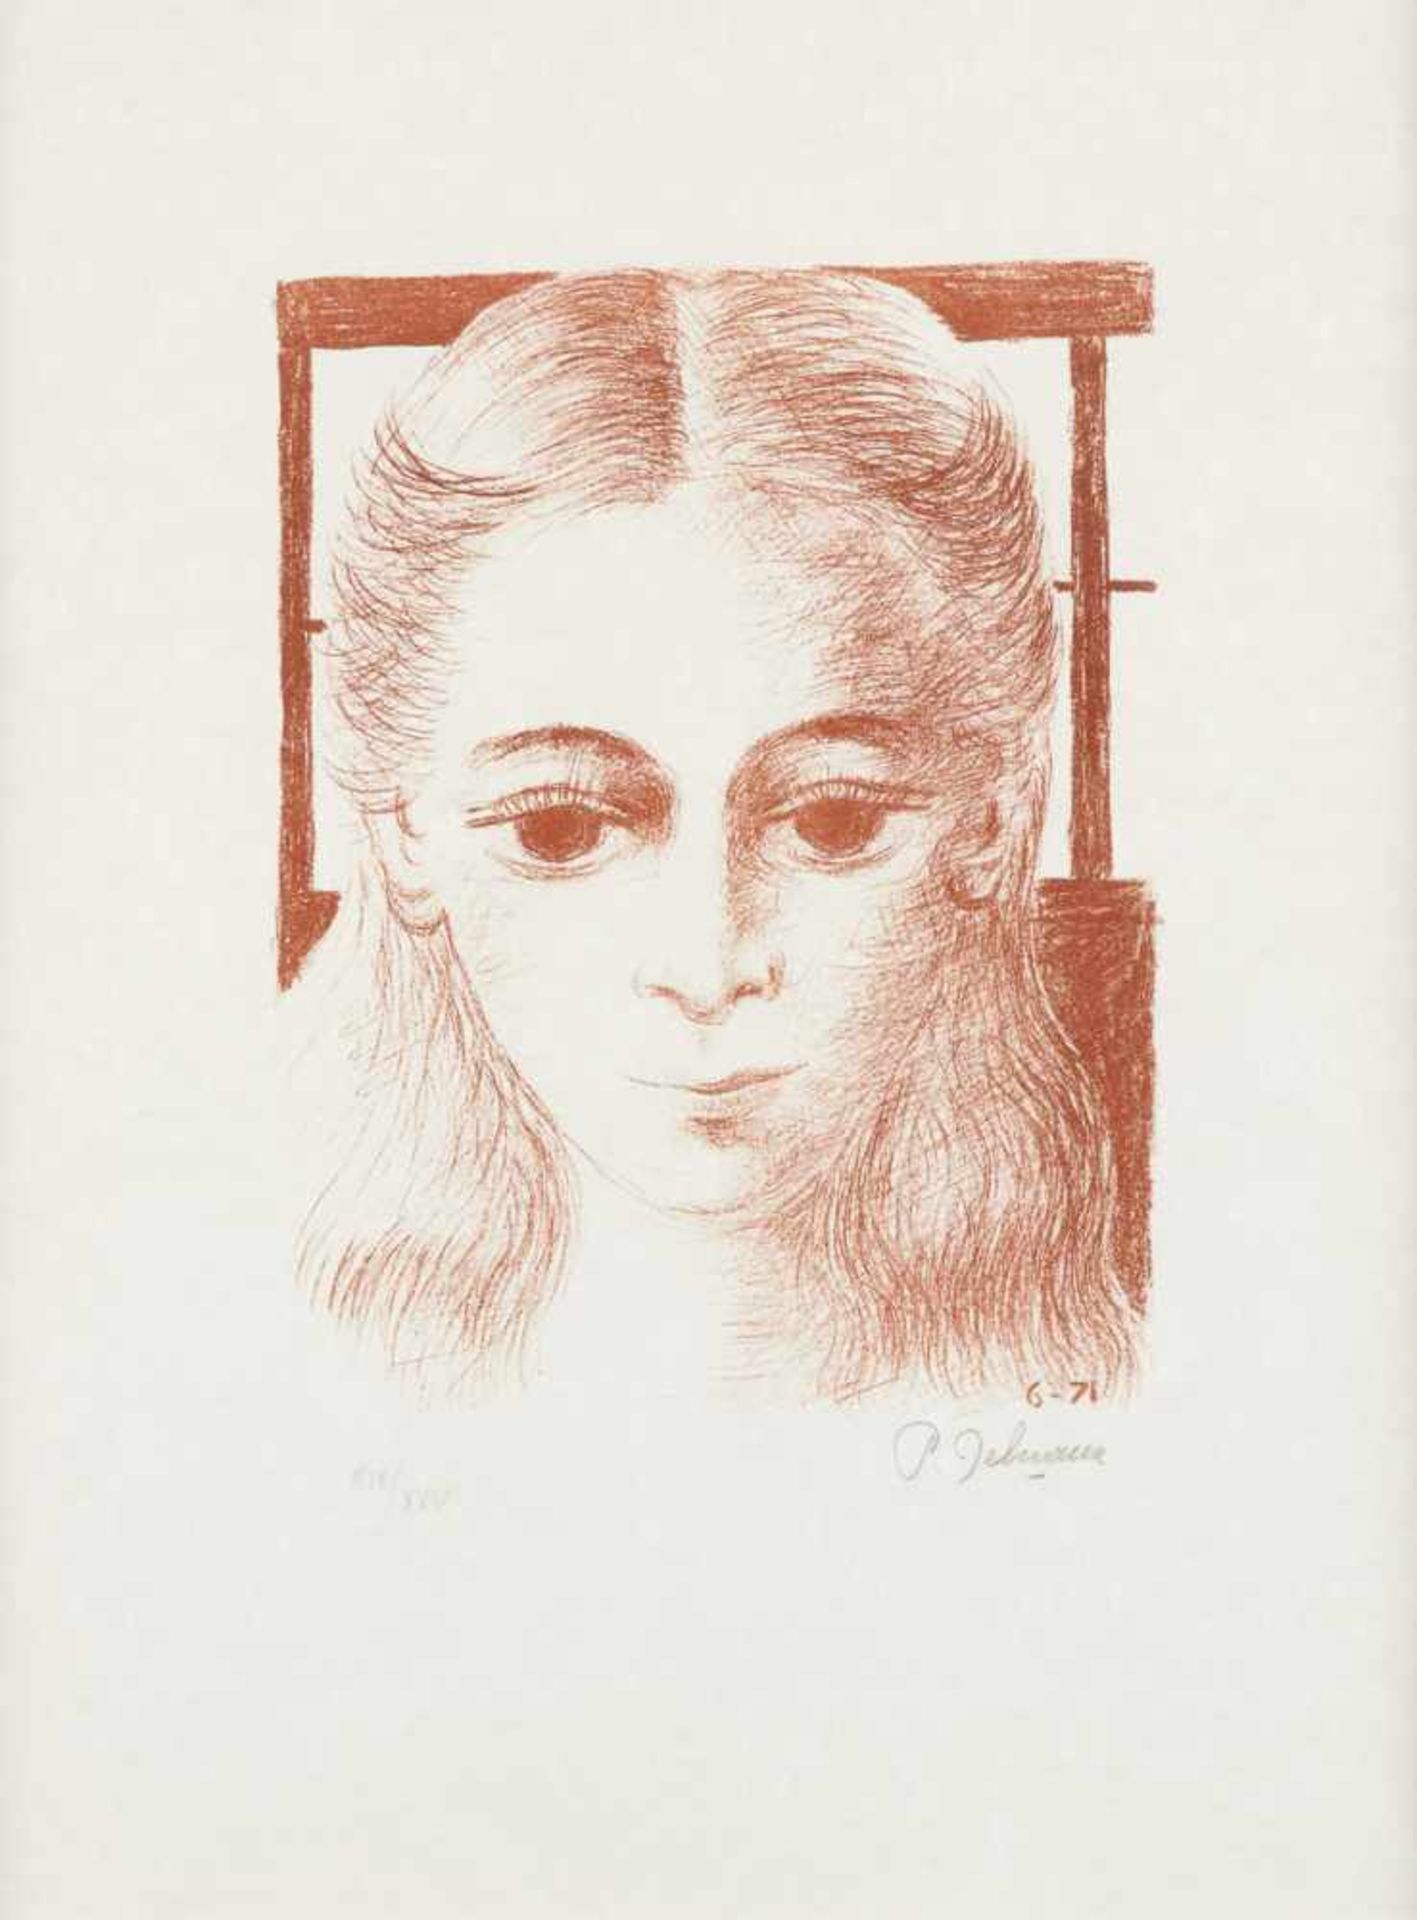 Paul DELVAUX École belge (1897-1994)Estampe, lithographie bistre sur papier japon: "Anne de fac